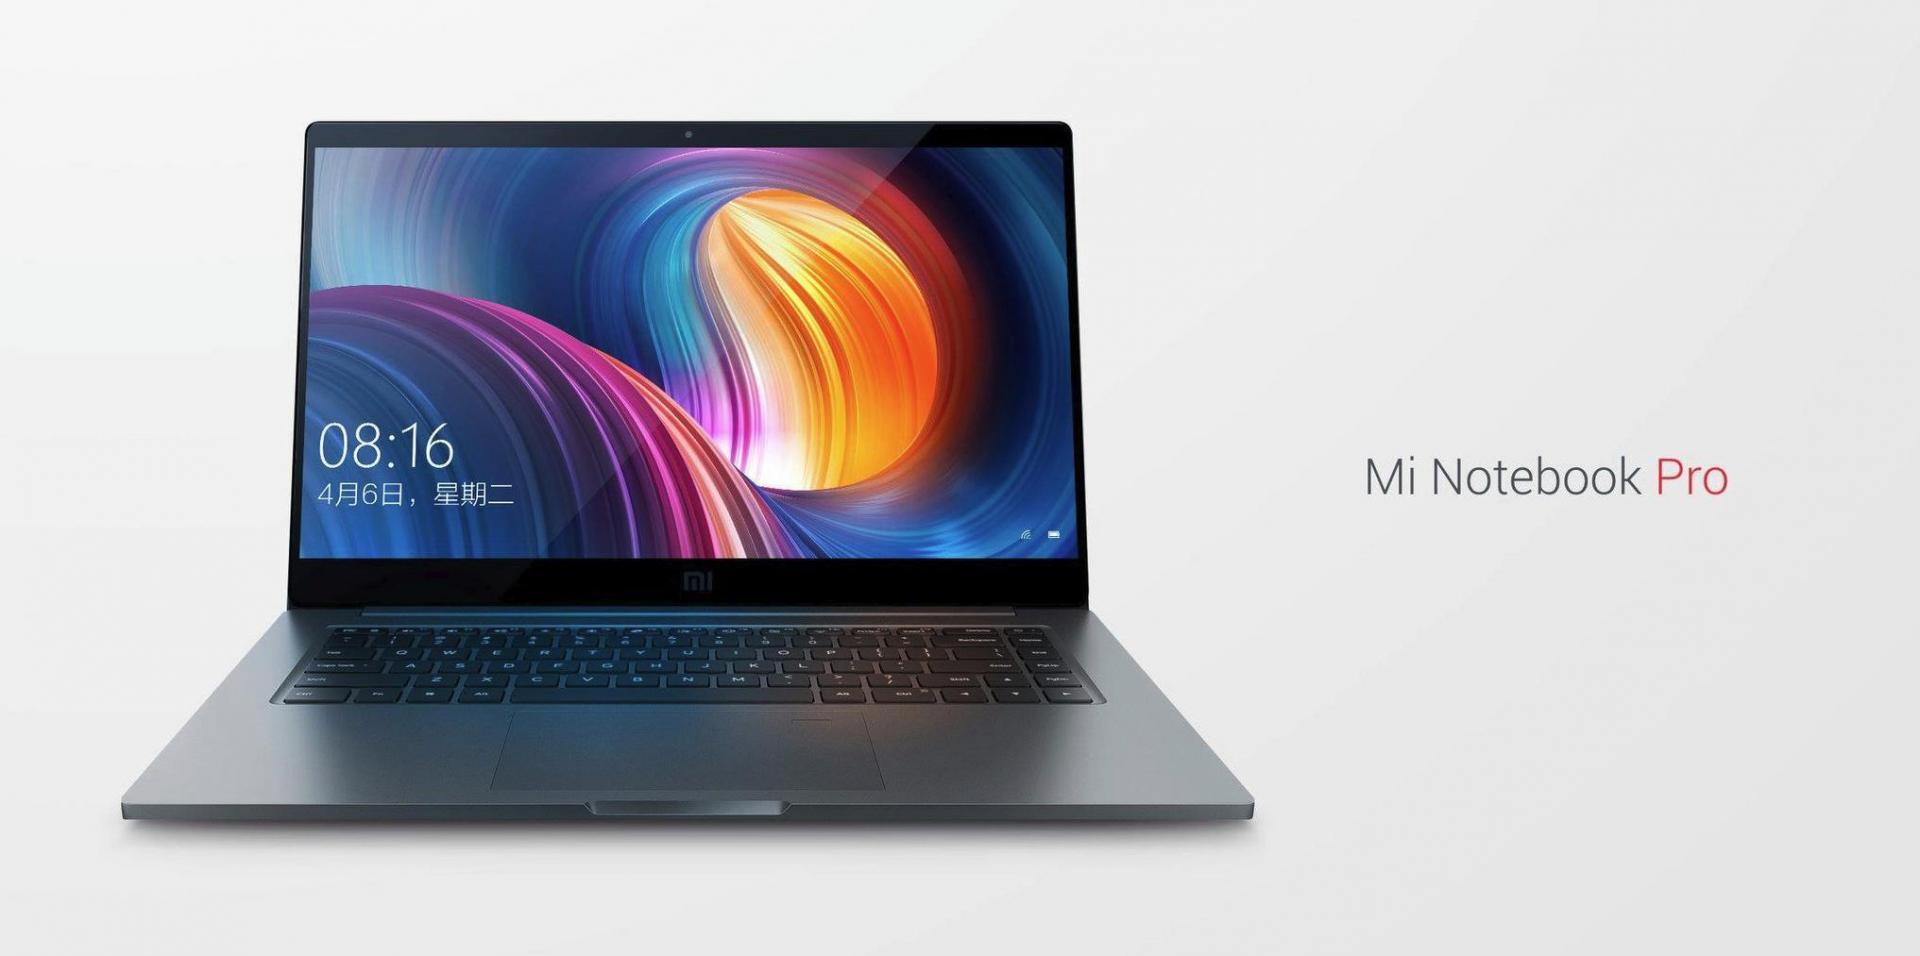 Говорят, что ноутбук Xiaomi Mi Notebook Pro круче Macbook